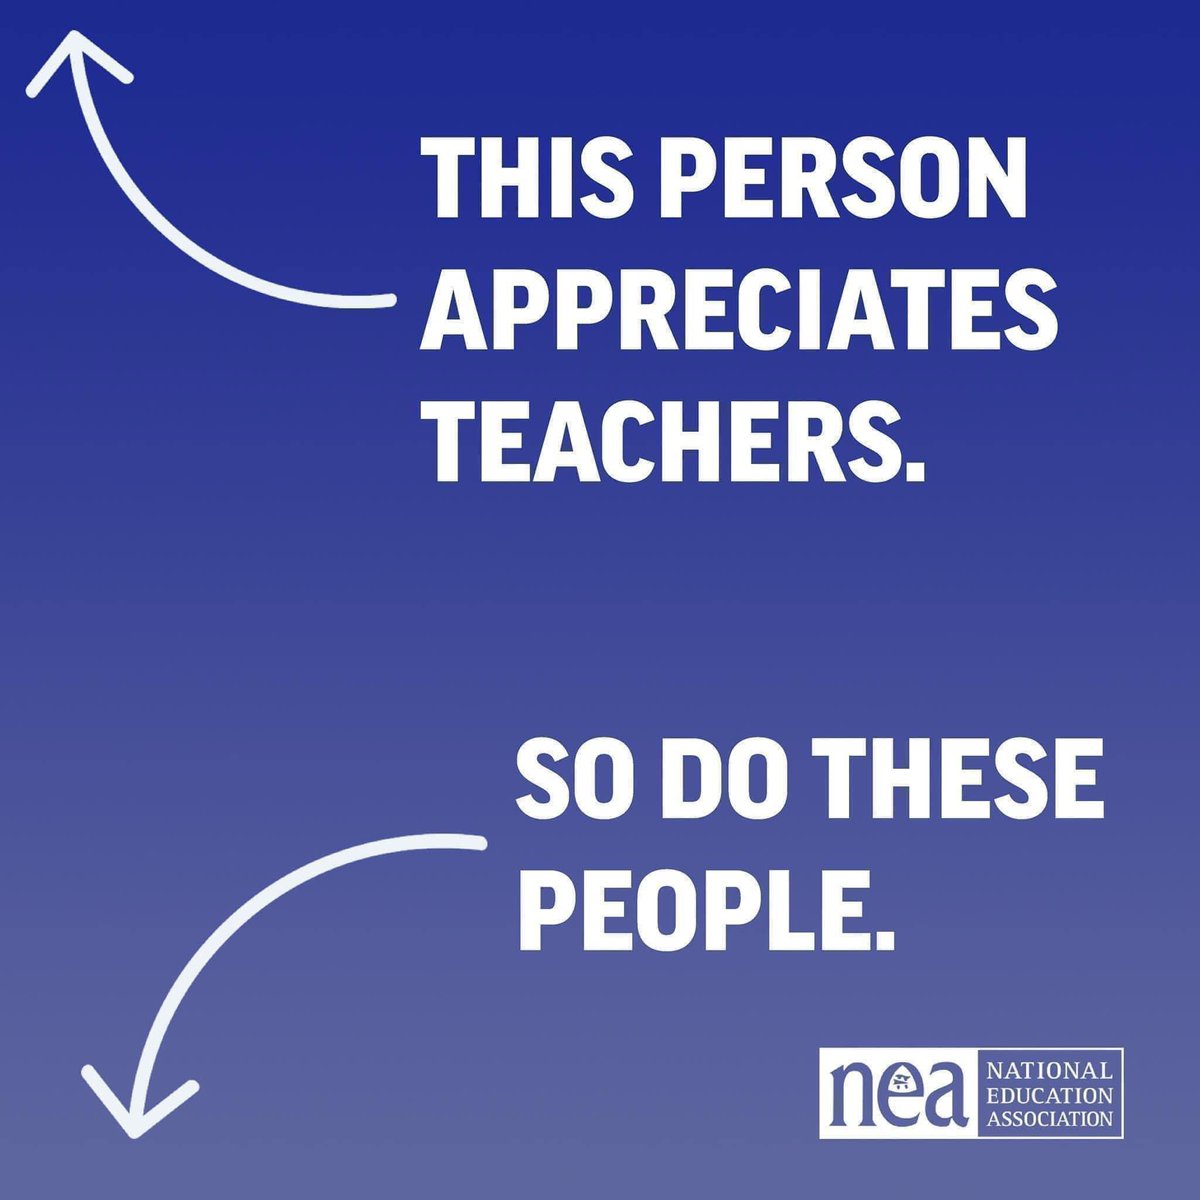 #TeacherAppreciation #TeacherAppreciationWeek #txed #teacher